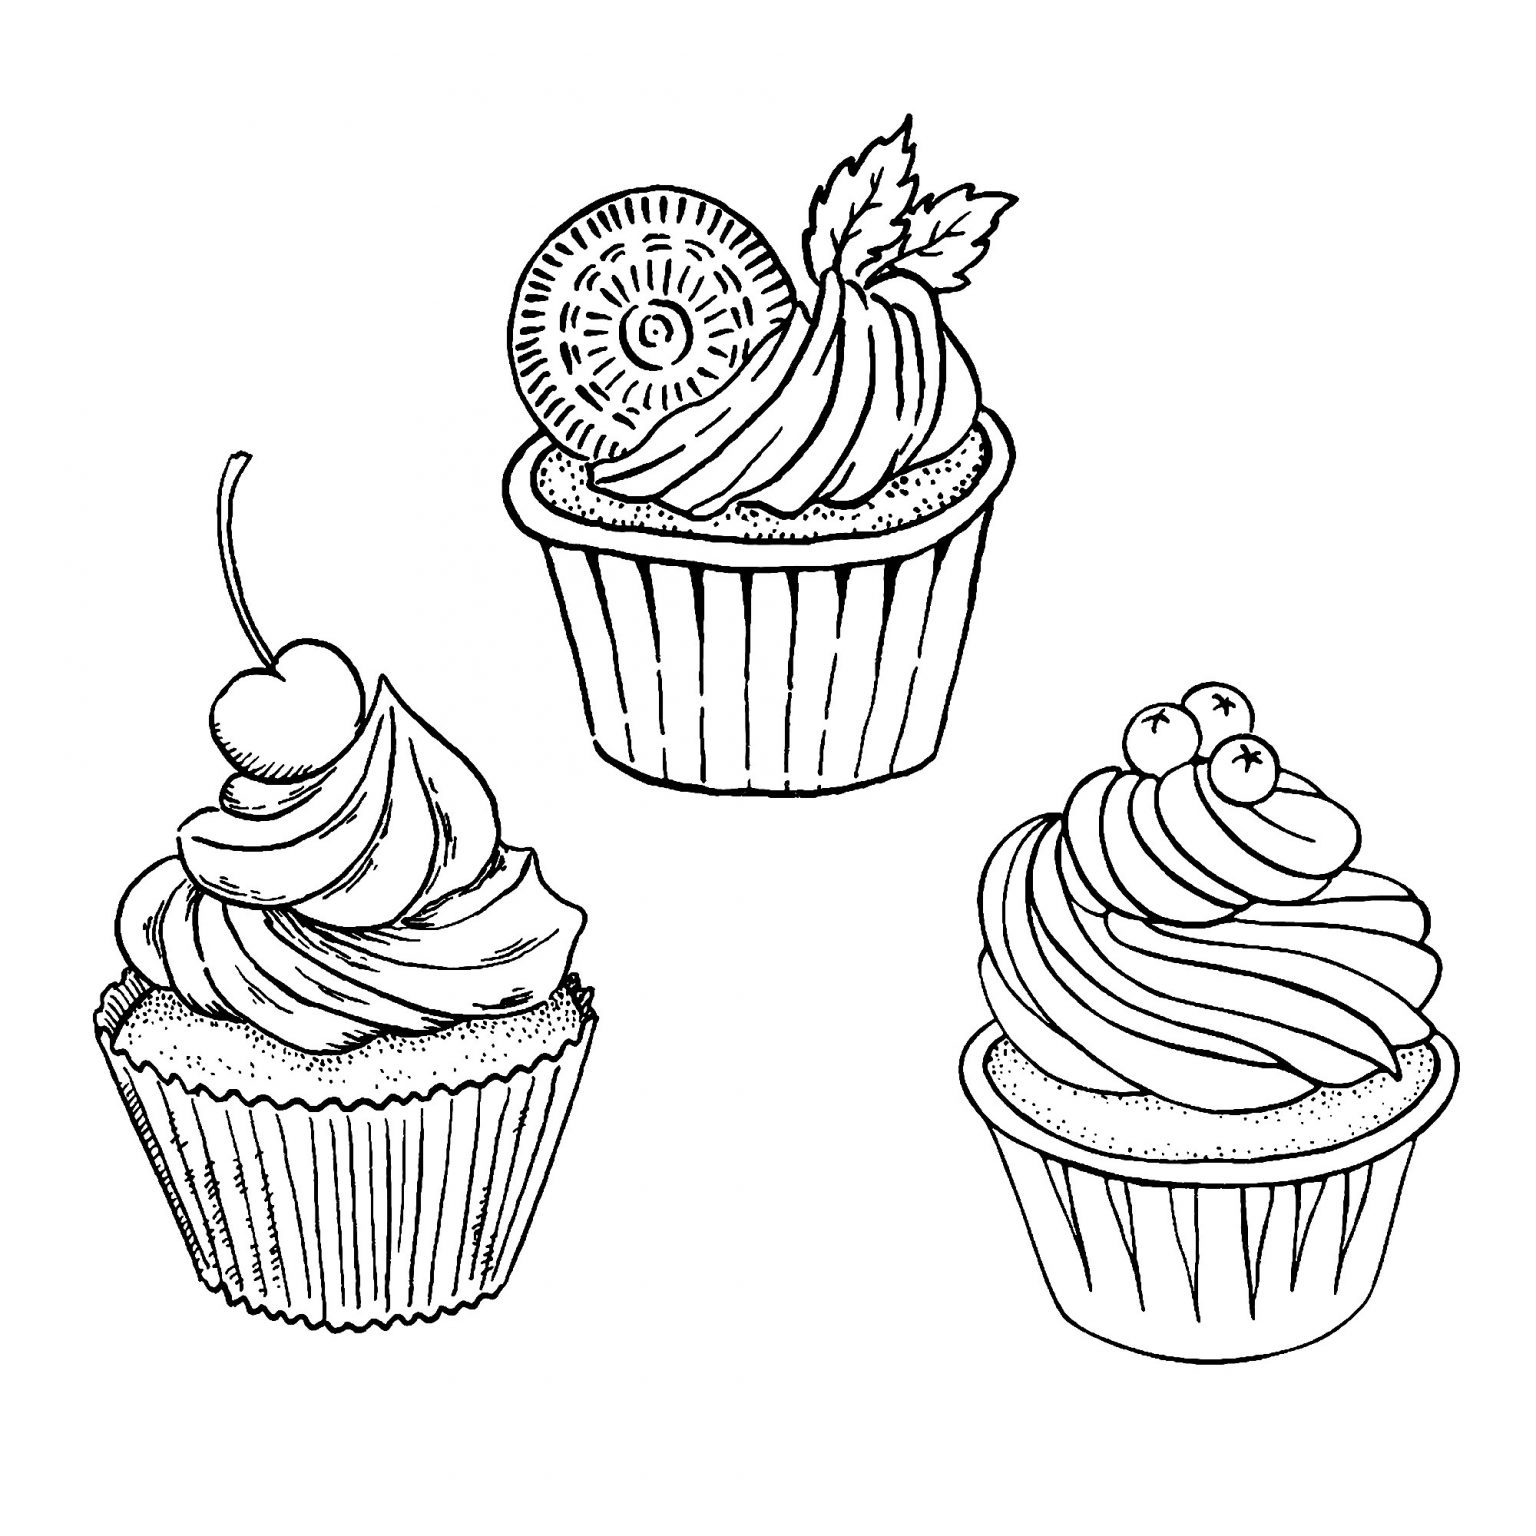 Coloriage De Cupcake Nice Trois Bons Simples Cupcakes Coloriage Cupcakes Et